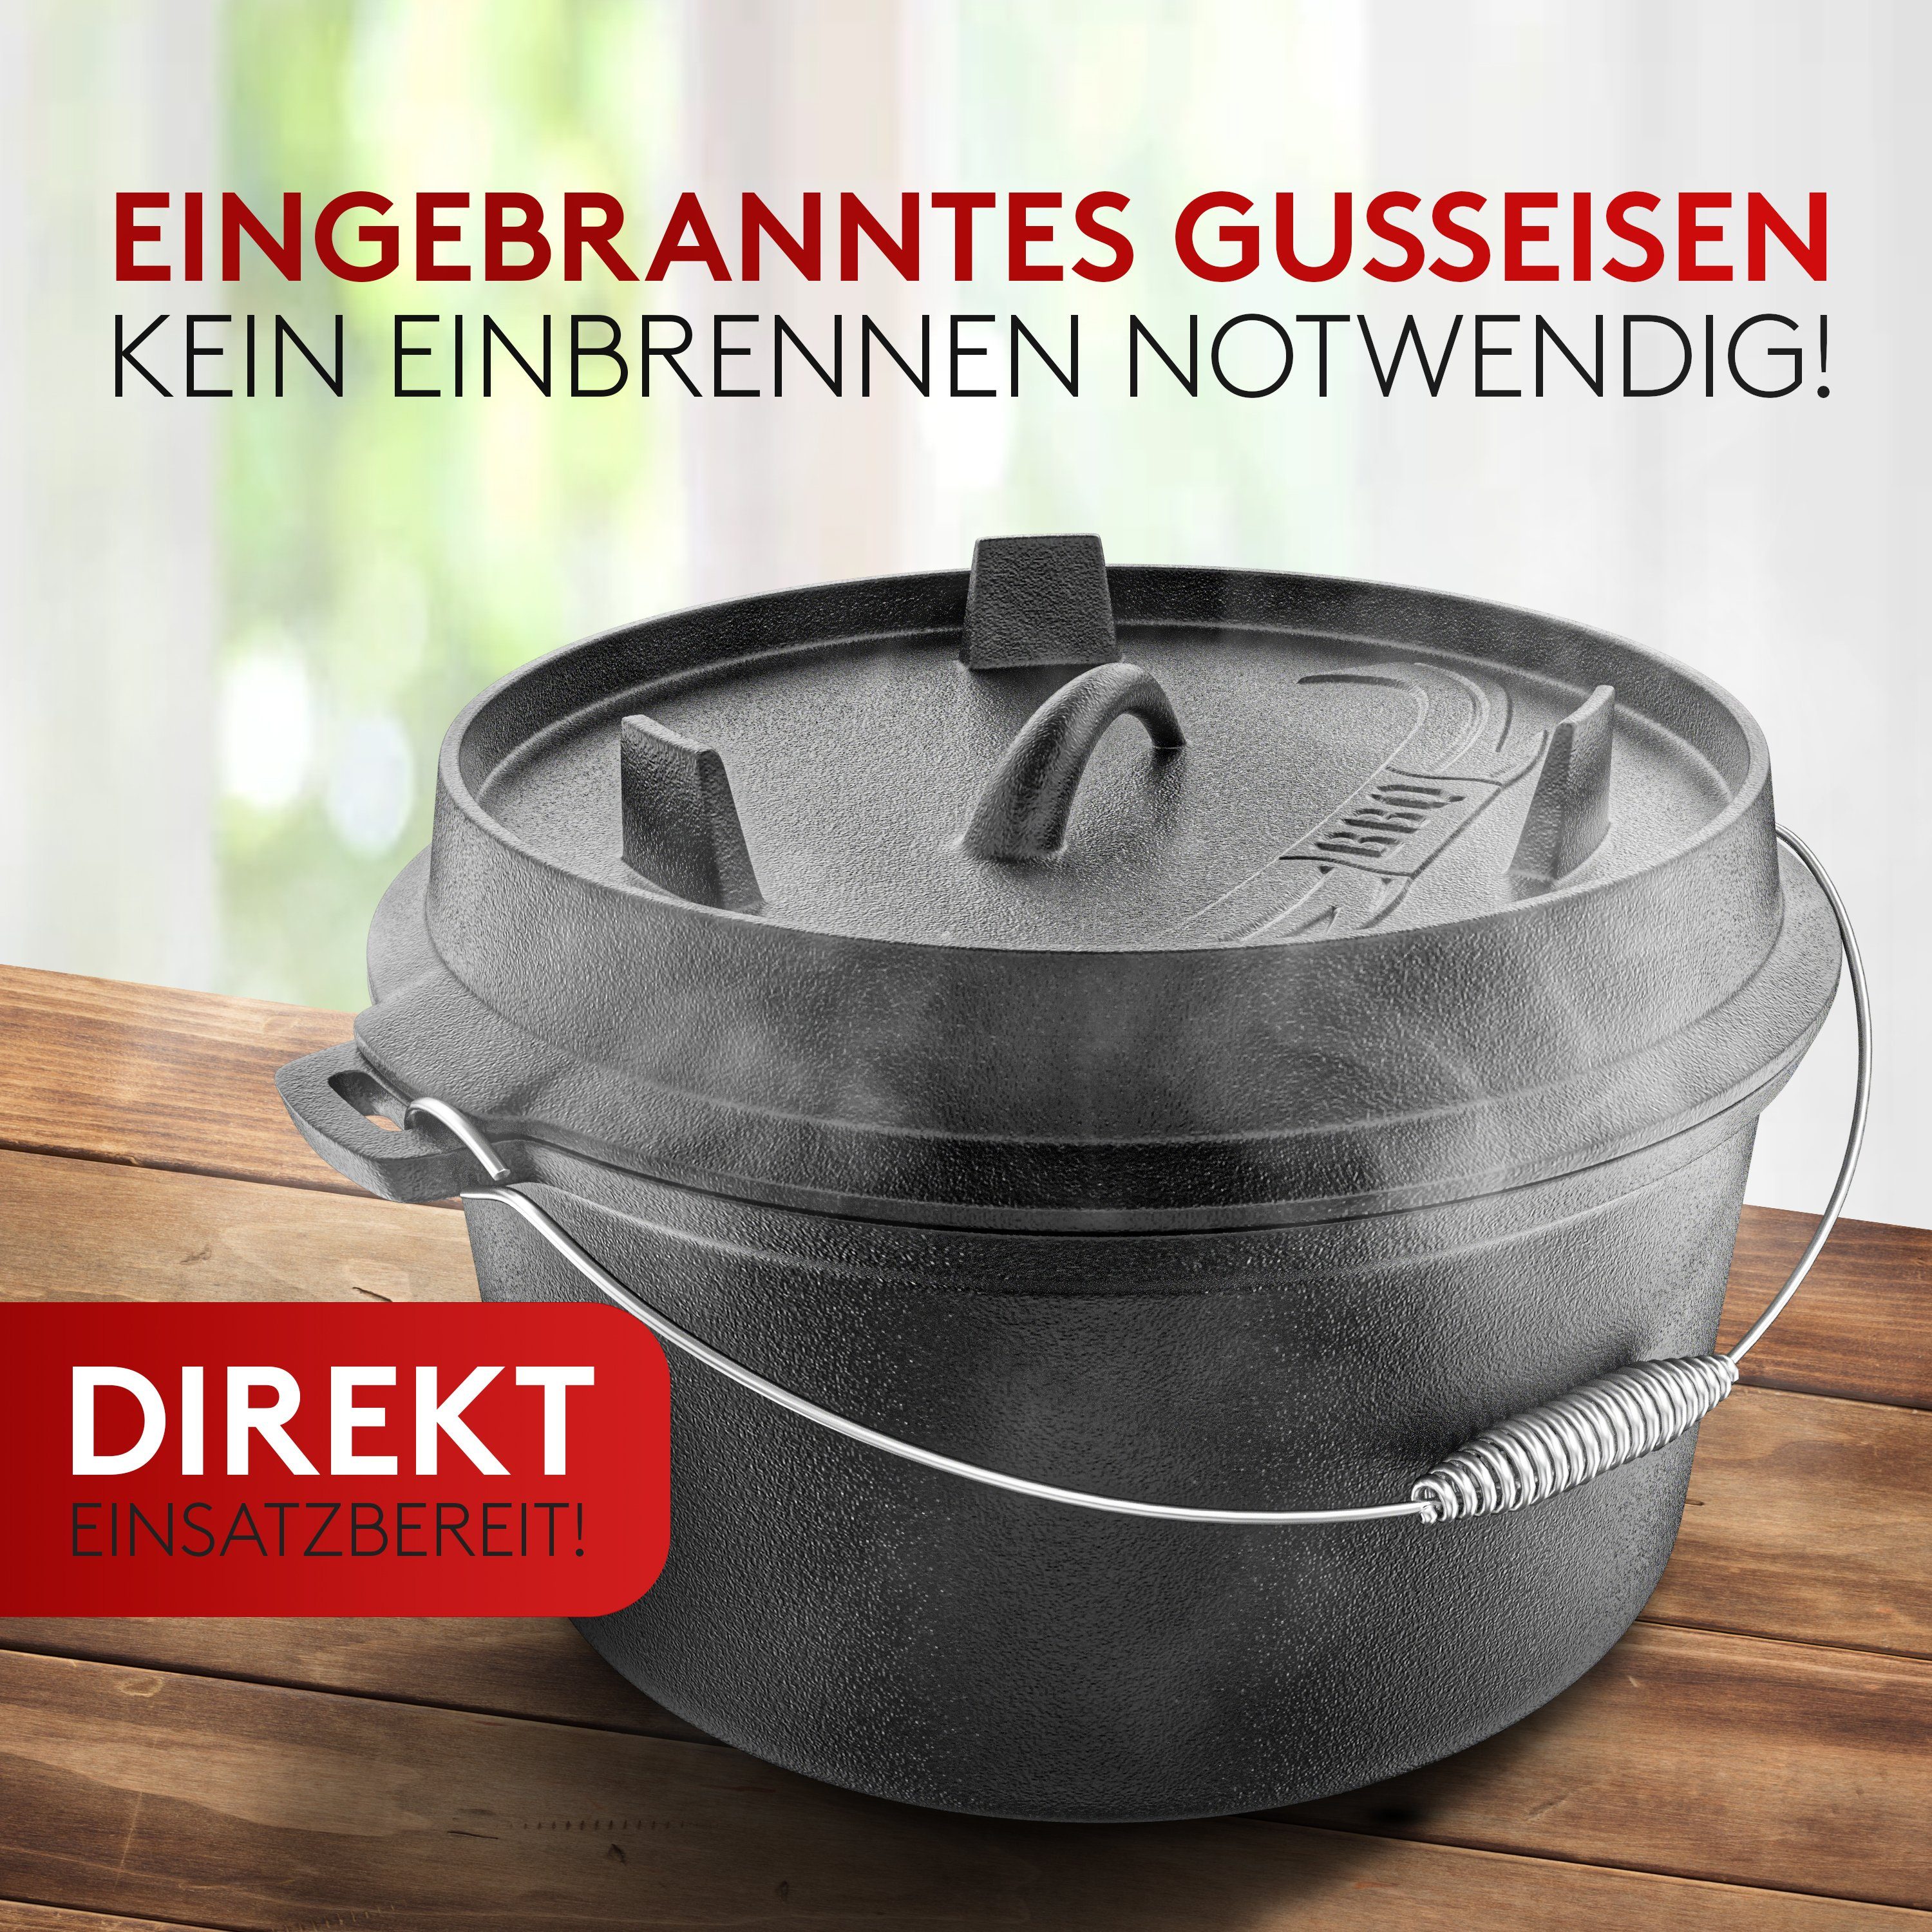 Amandi Feuertopf BBQ Dutch Gusseisen, - - [7L] Oven Oven Original] Induktion, Set Edelstahl Für Dutch [Das